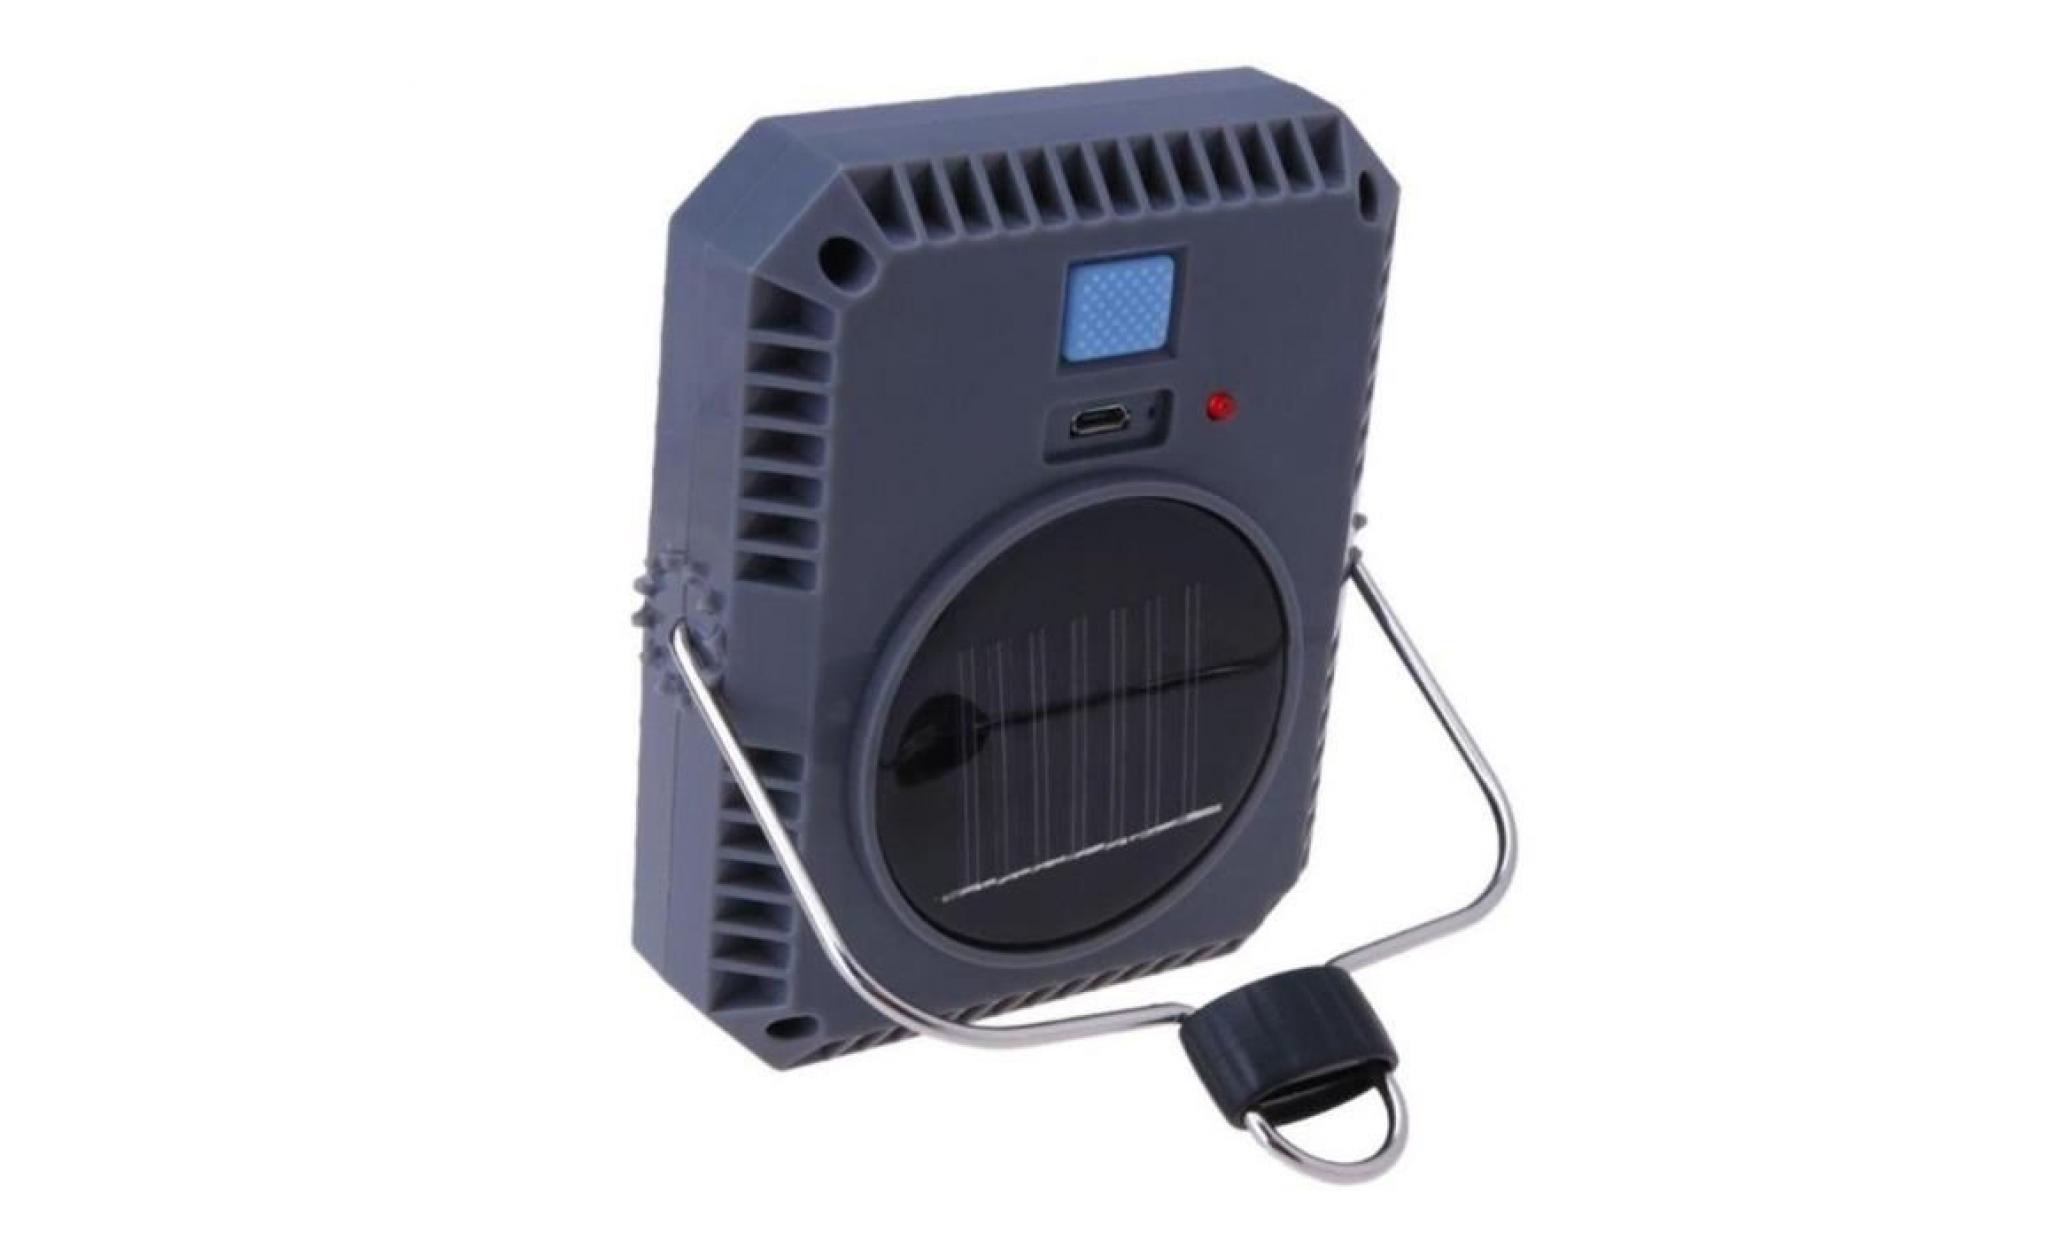 tempsa 5w projecteur solaire usb rechargeable imperméable 3 modes pr camping extérieur pas cher